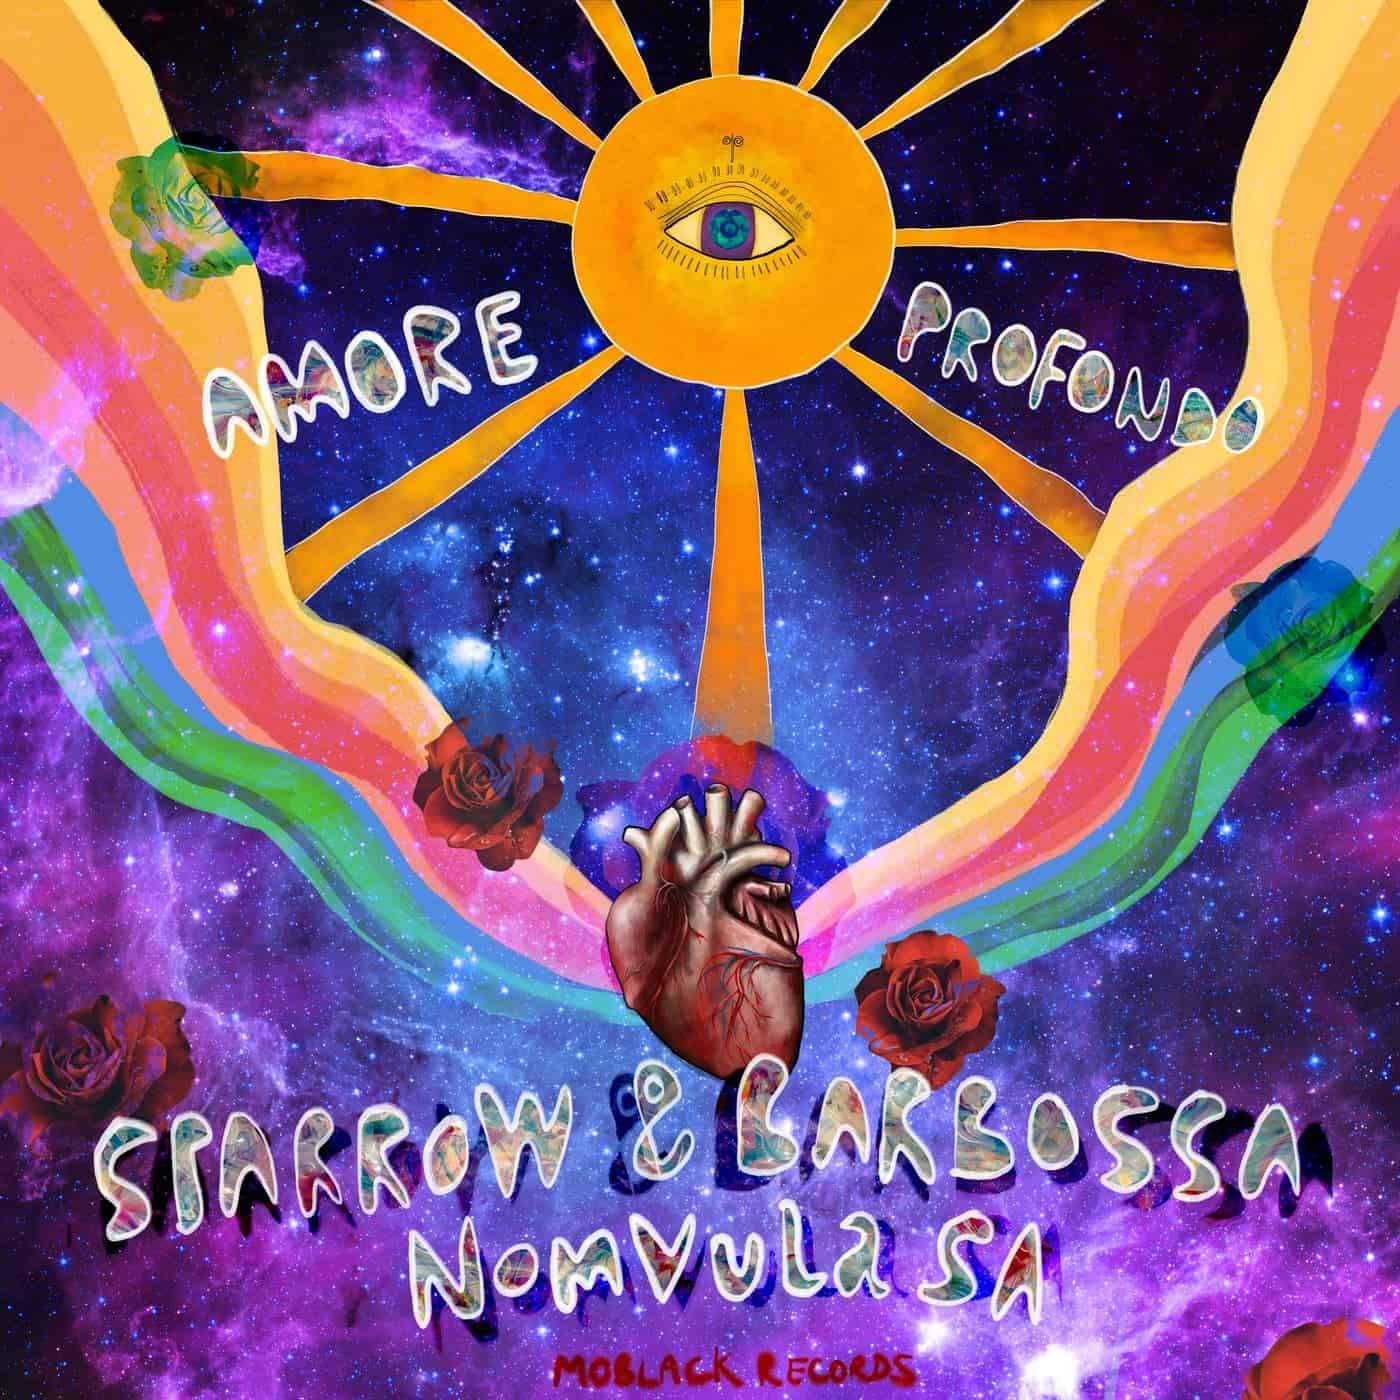 image cover: Sparrow & Barbossa, Nomvula SA - Amore Profondo / MBR479